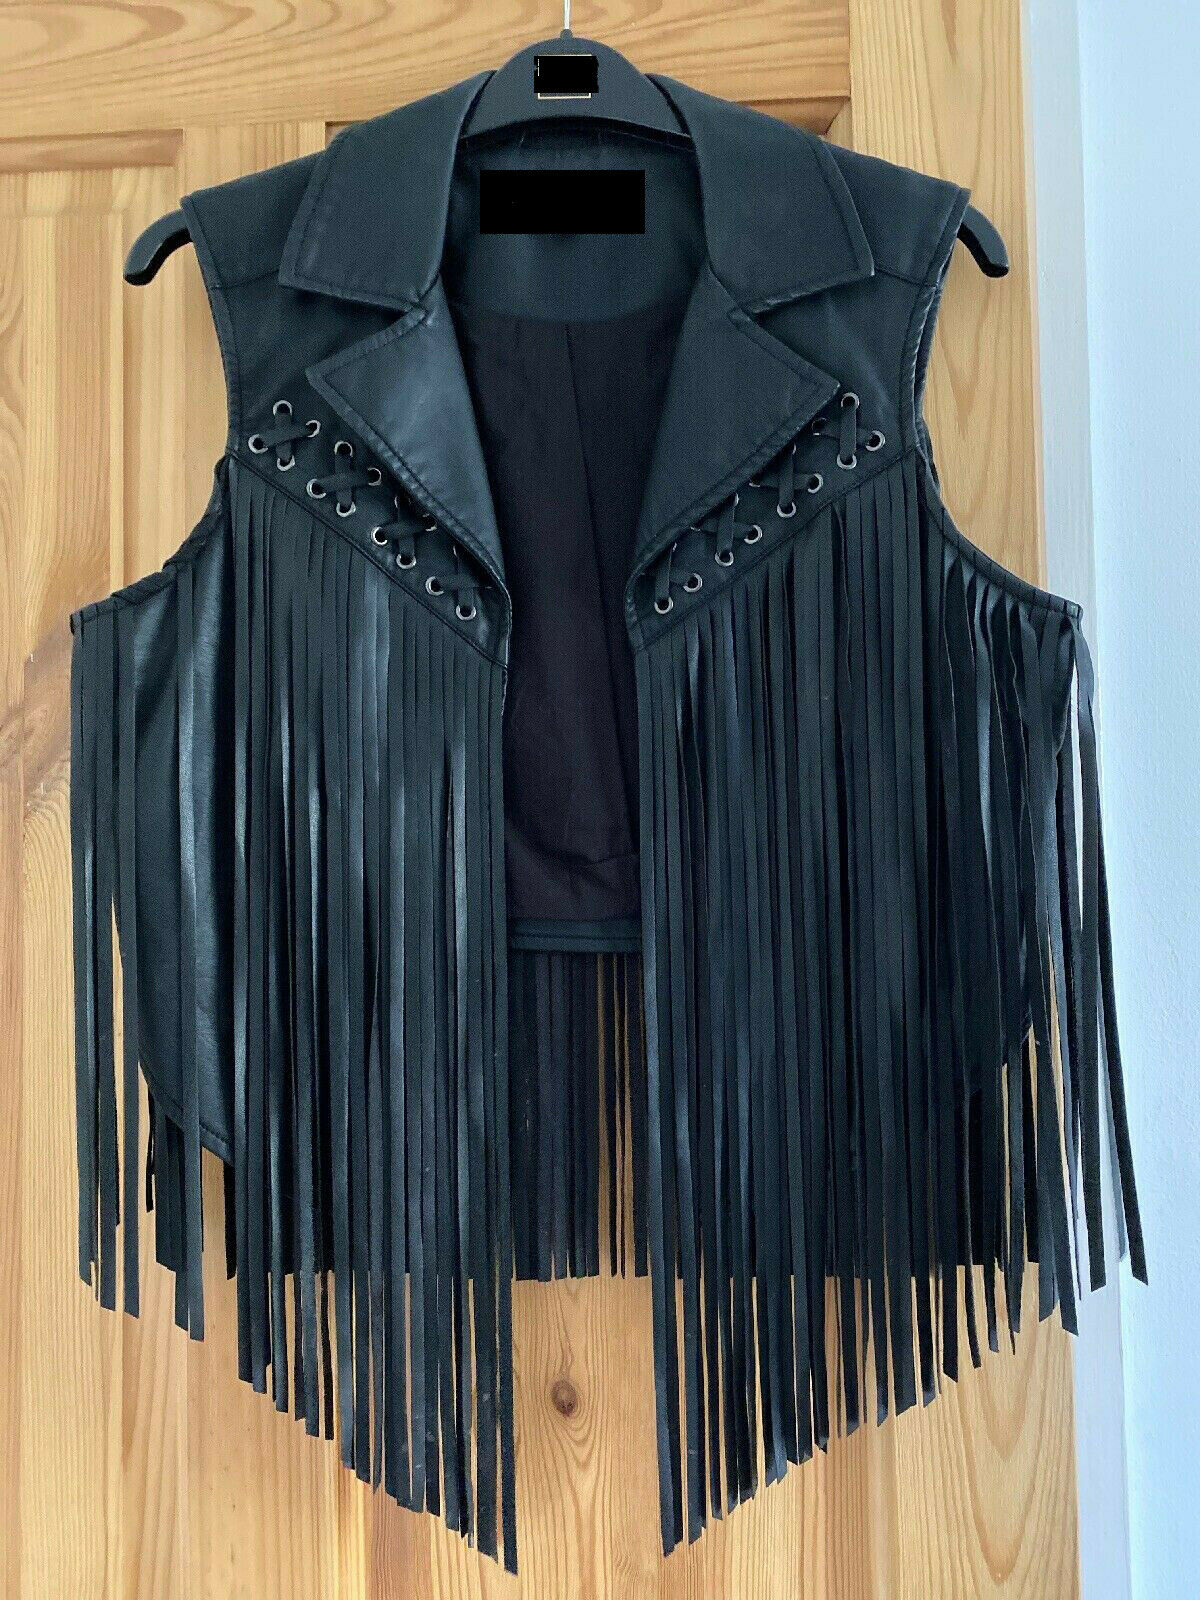 Noora NEW Gorgeous Women BLACK Leather Jacket Fringe Western Style Waist Coat